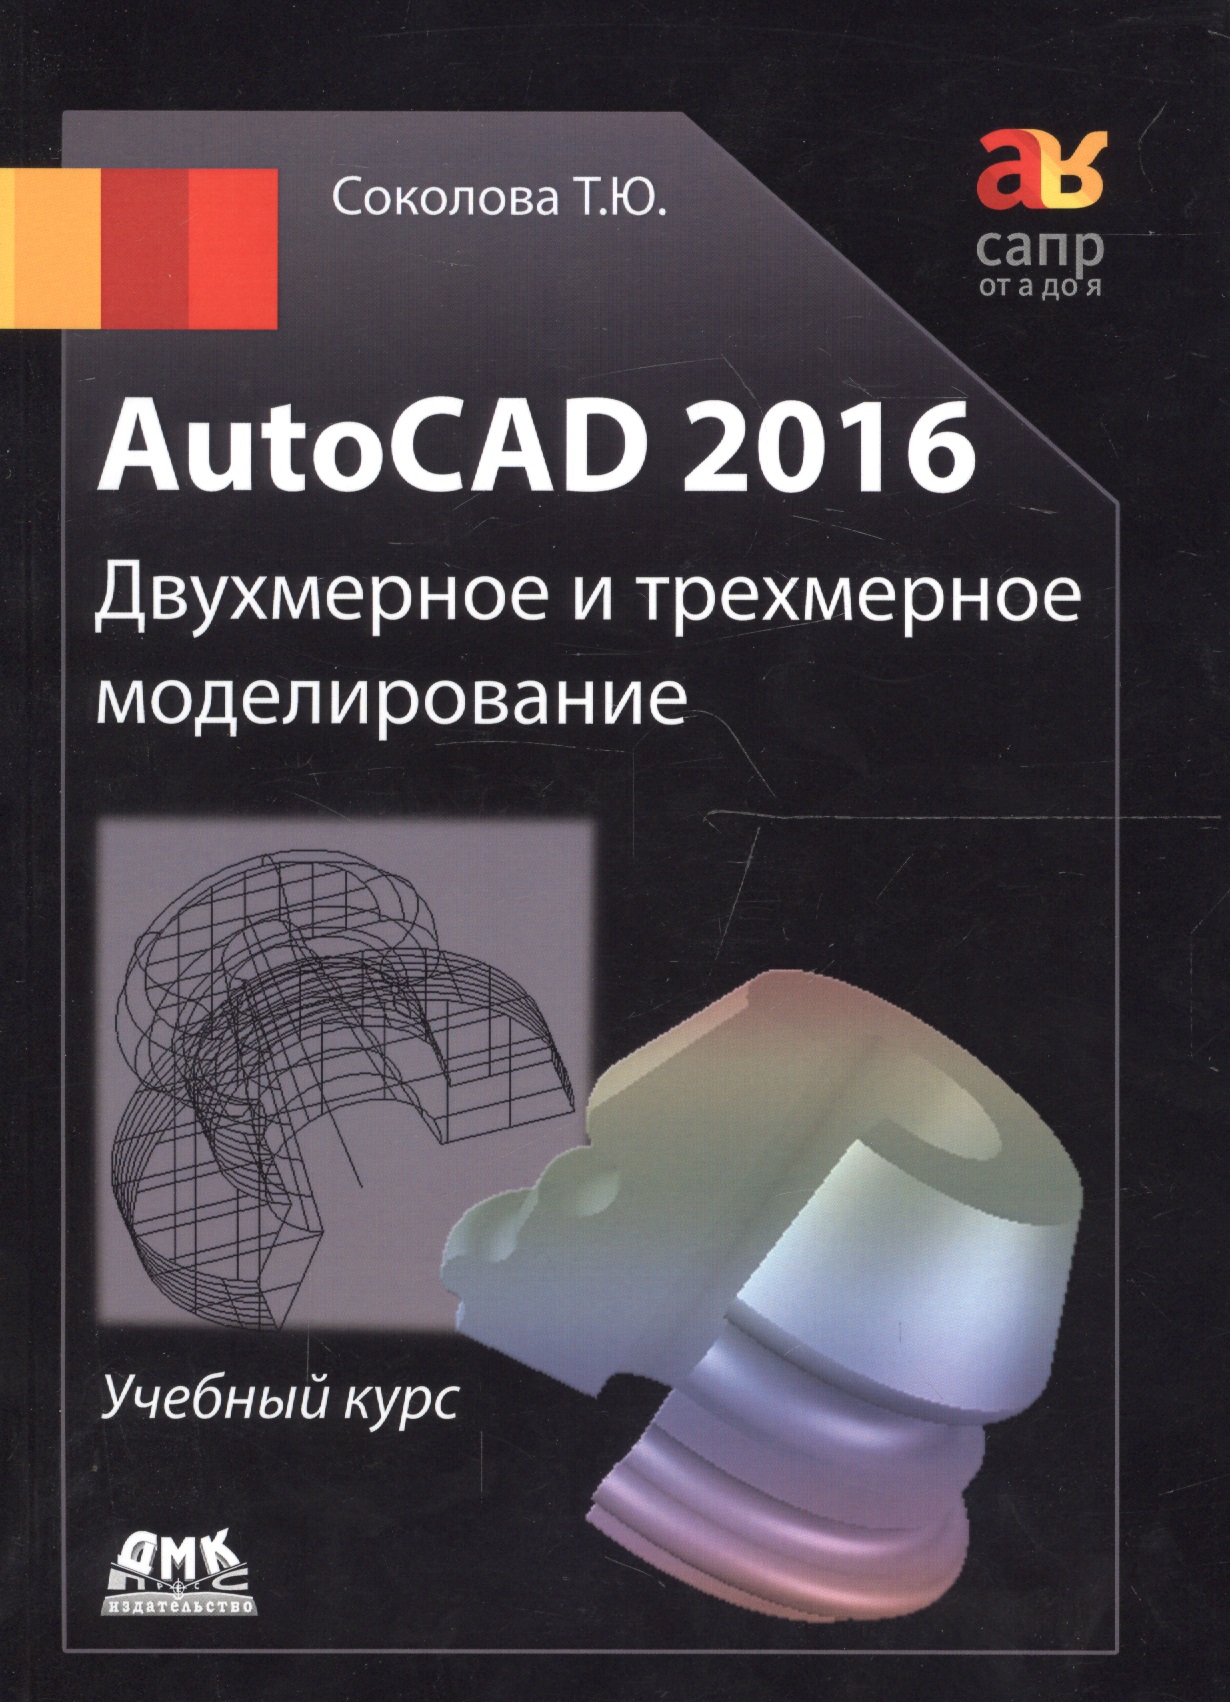 AutoCAD 2016/ Двухмерное и трехмерное моделирование. Учебный курс соколова татьяна юрьевна autocad 2016 двухмерное и трехмерное моделиров учебный курс